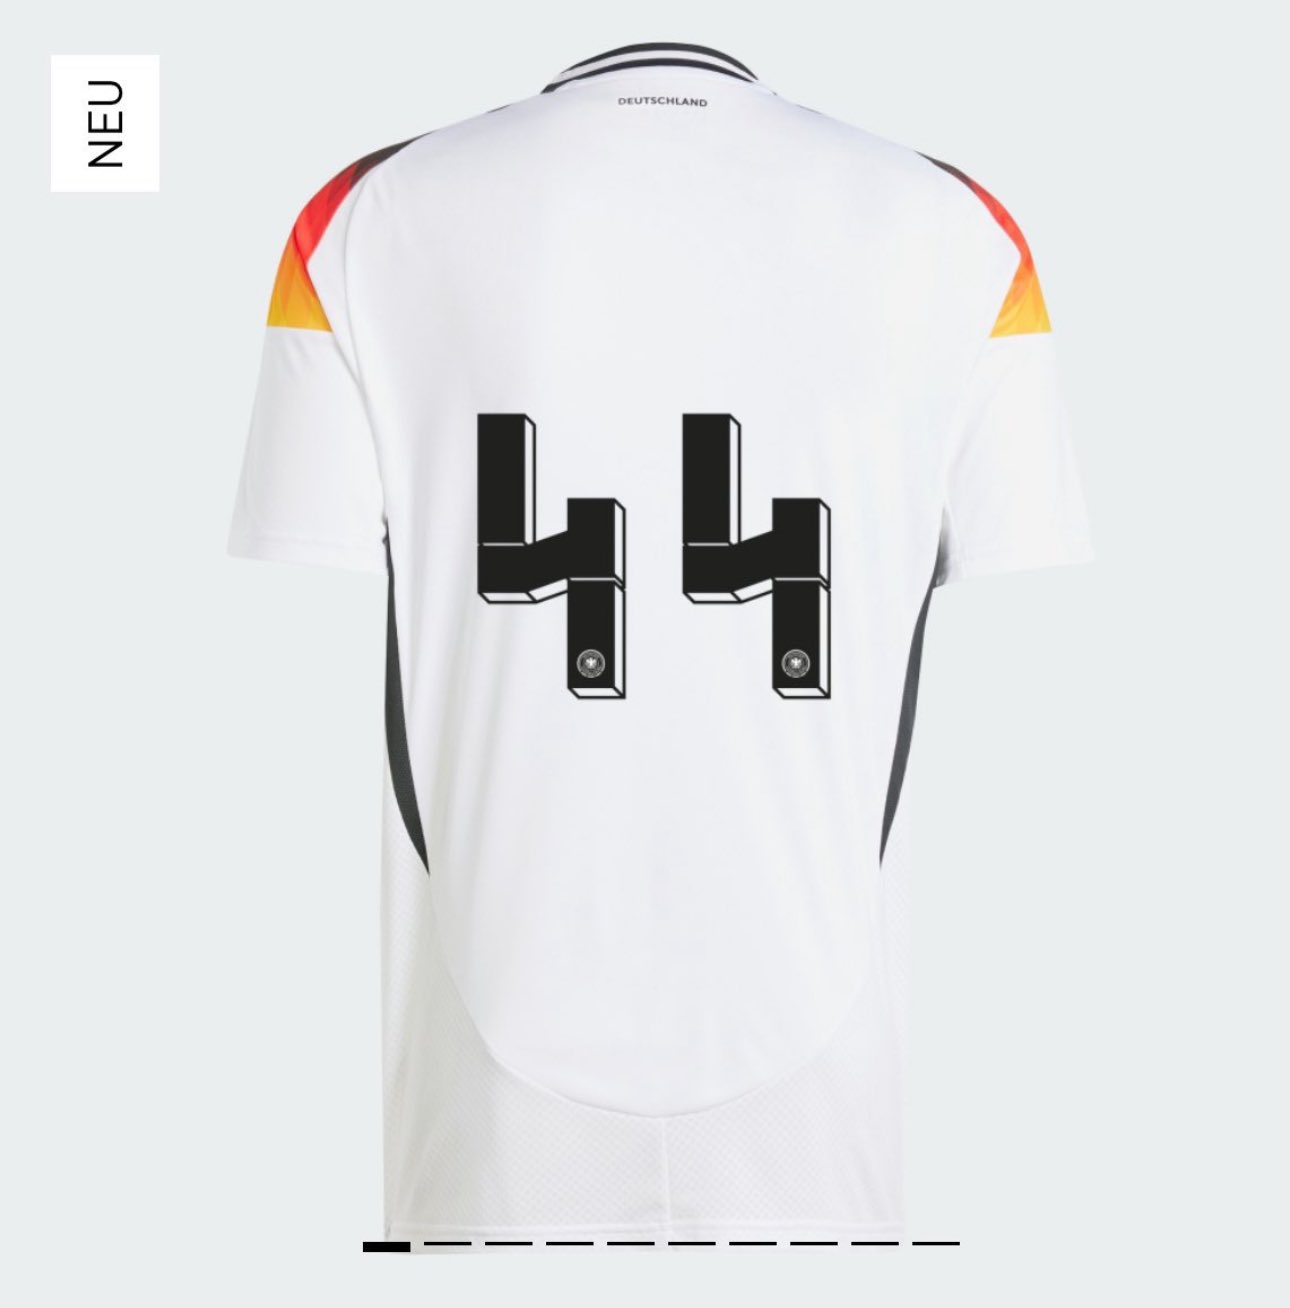 Camisa da Alemanha personalizada com o número 44